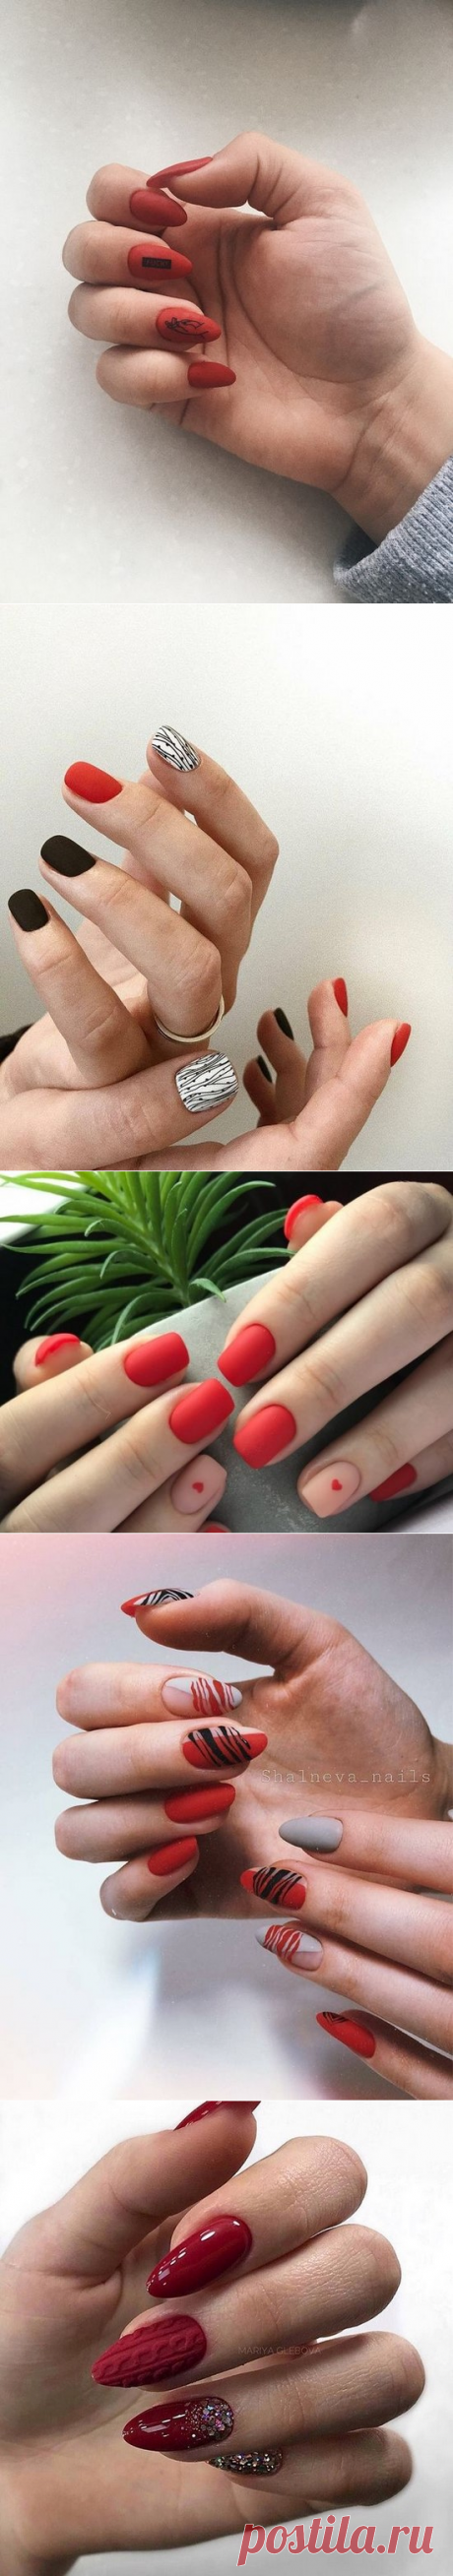 Красные ногти 2020-2021 на фото. Модный красный маникюр и дизайн ногтей в красном цвете | sovetyk